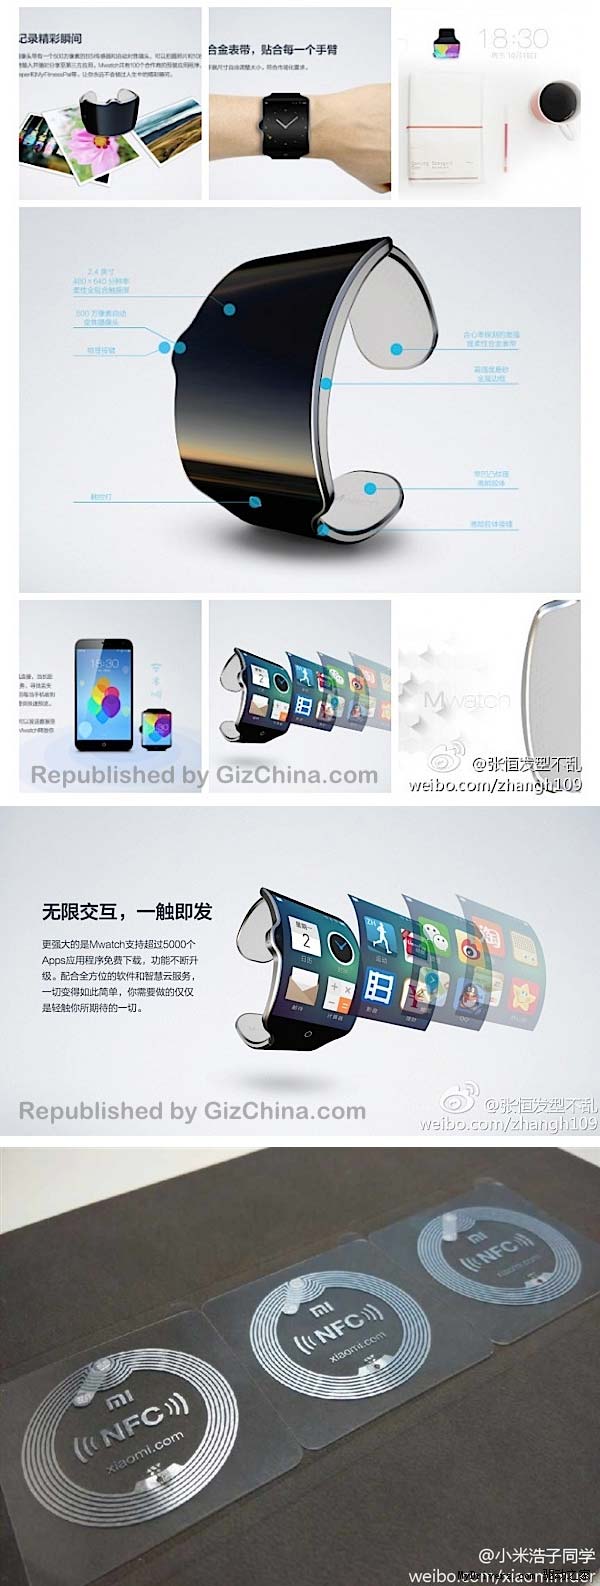 На фото показан концепт MWatch от Meizu и Xiaomi NFC теги